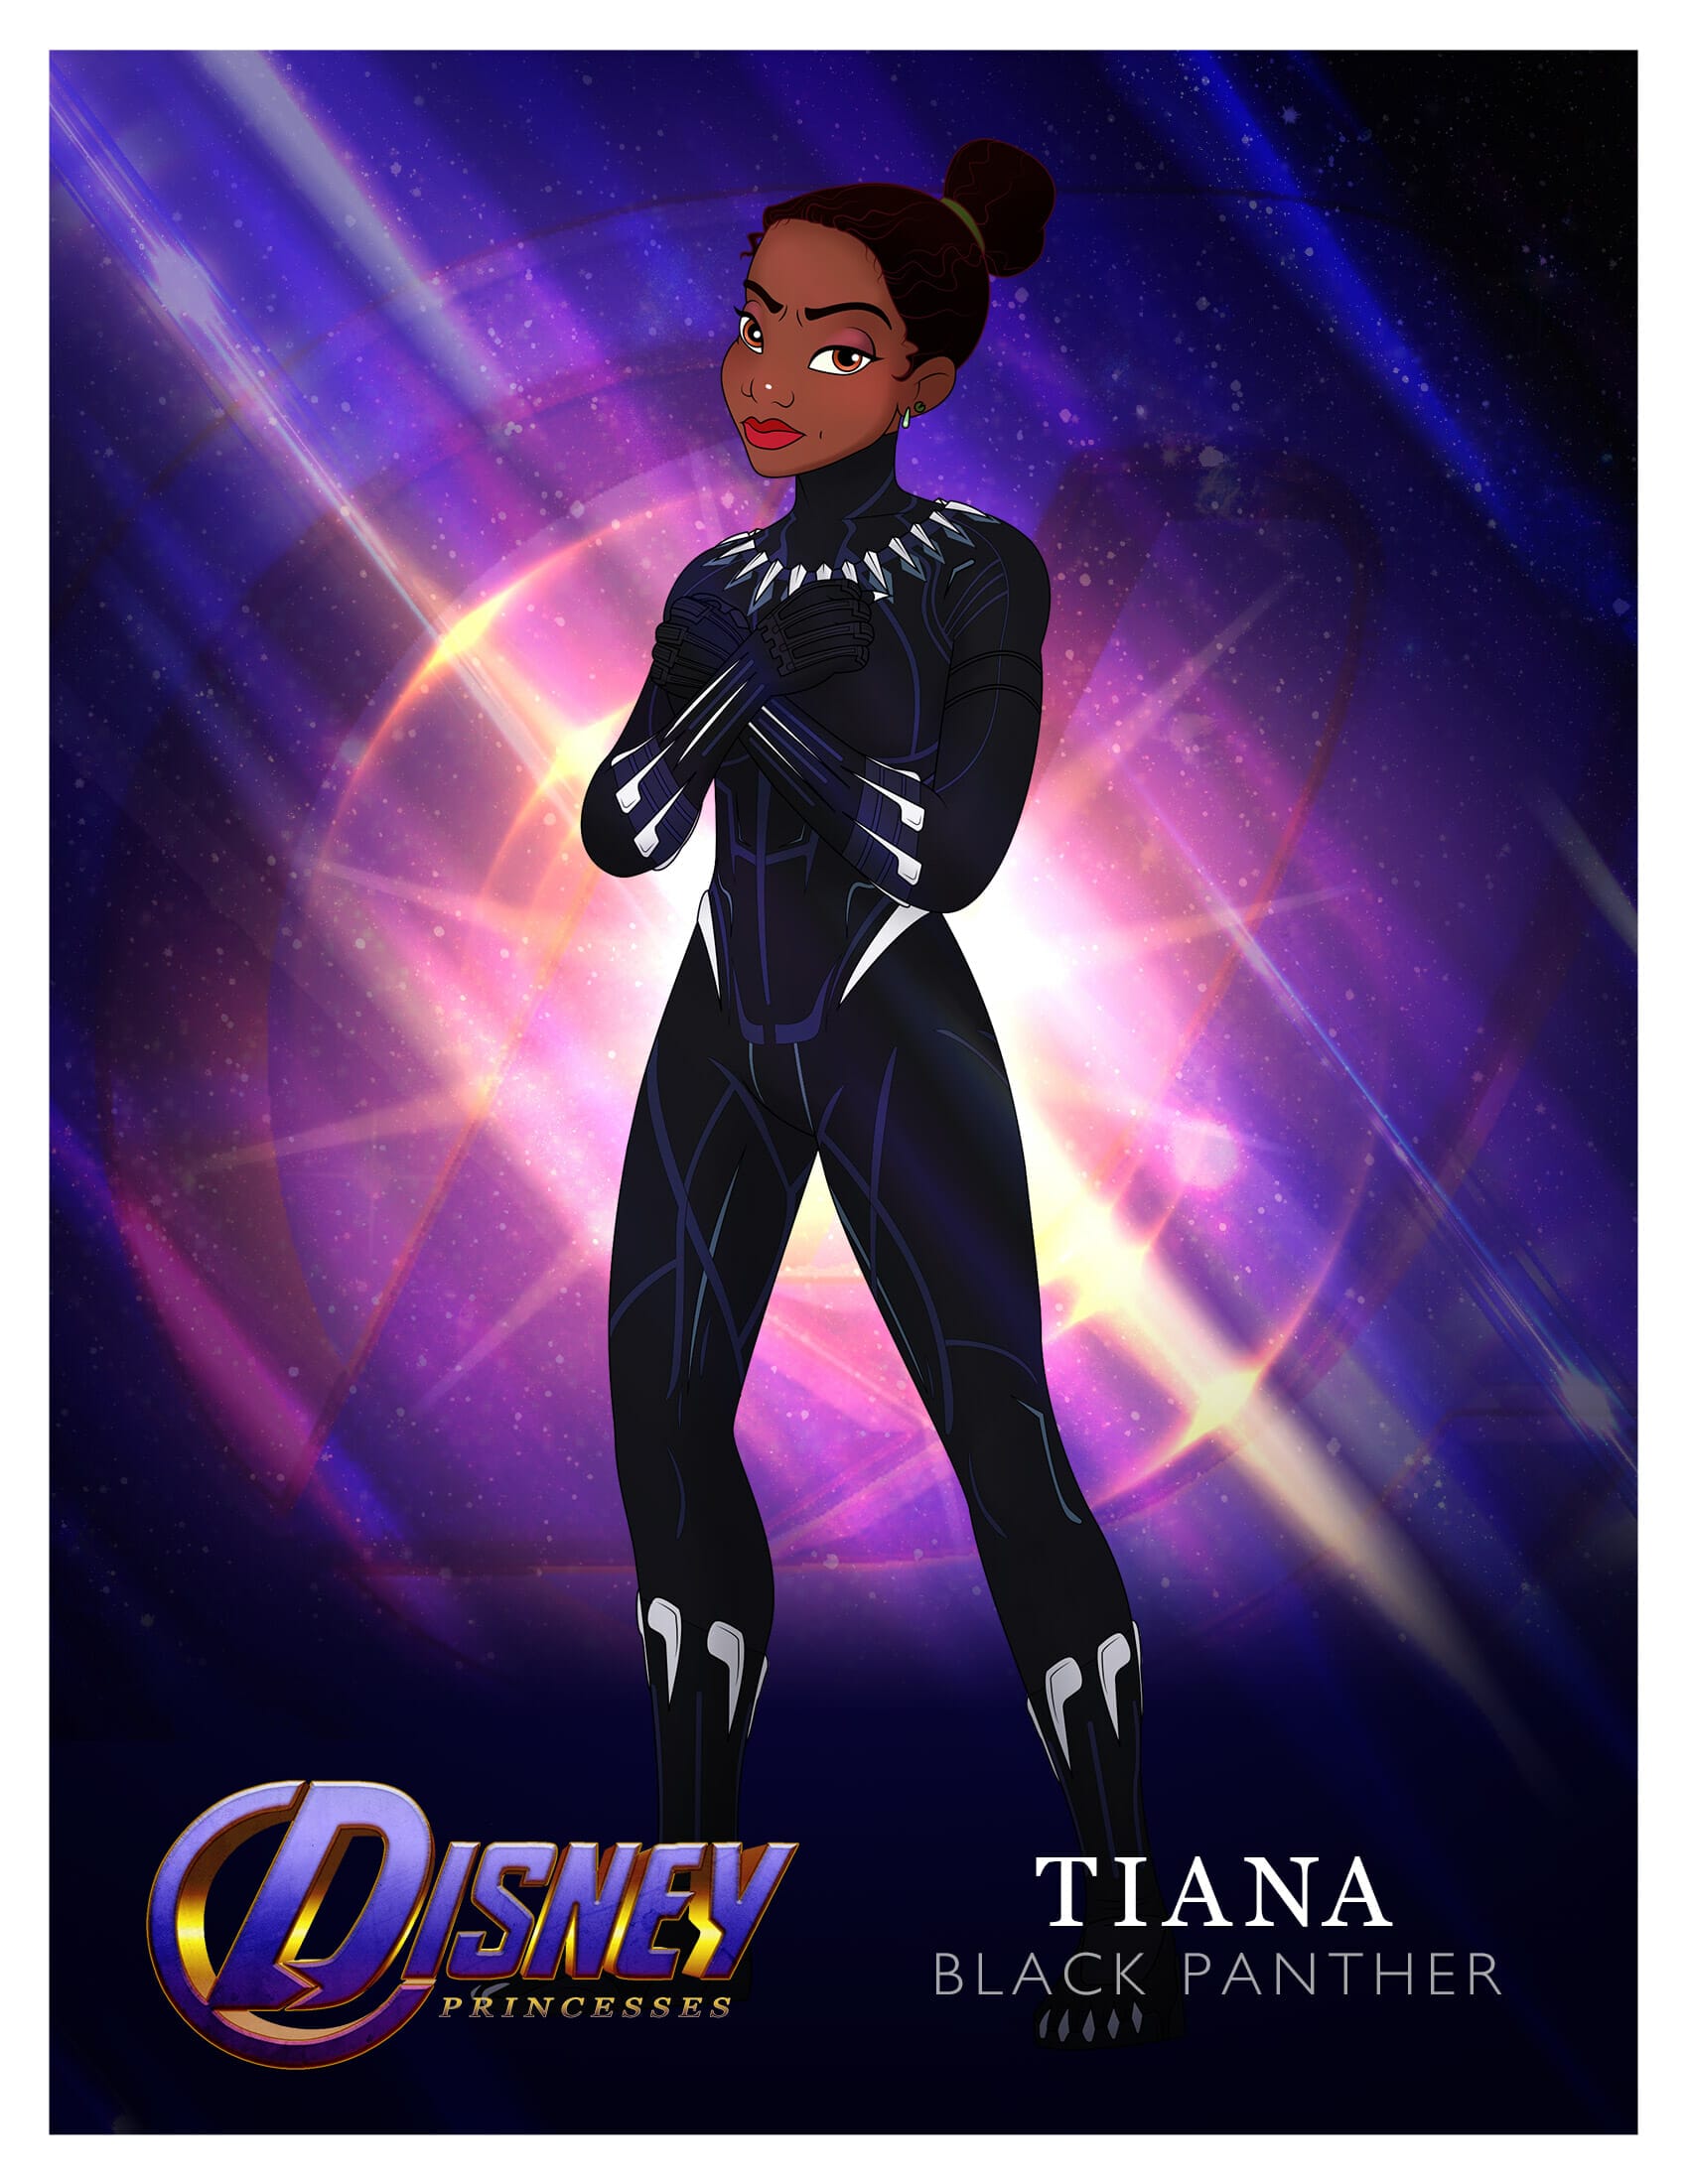 Princess Tiana as Black Panther